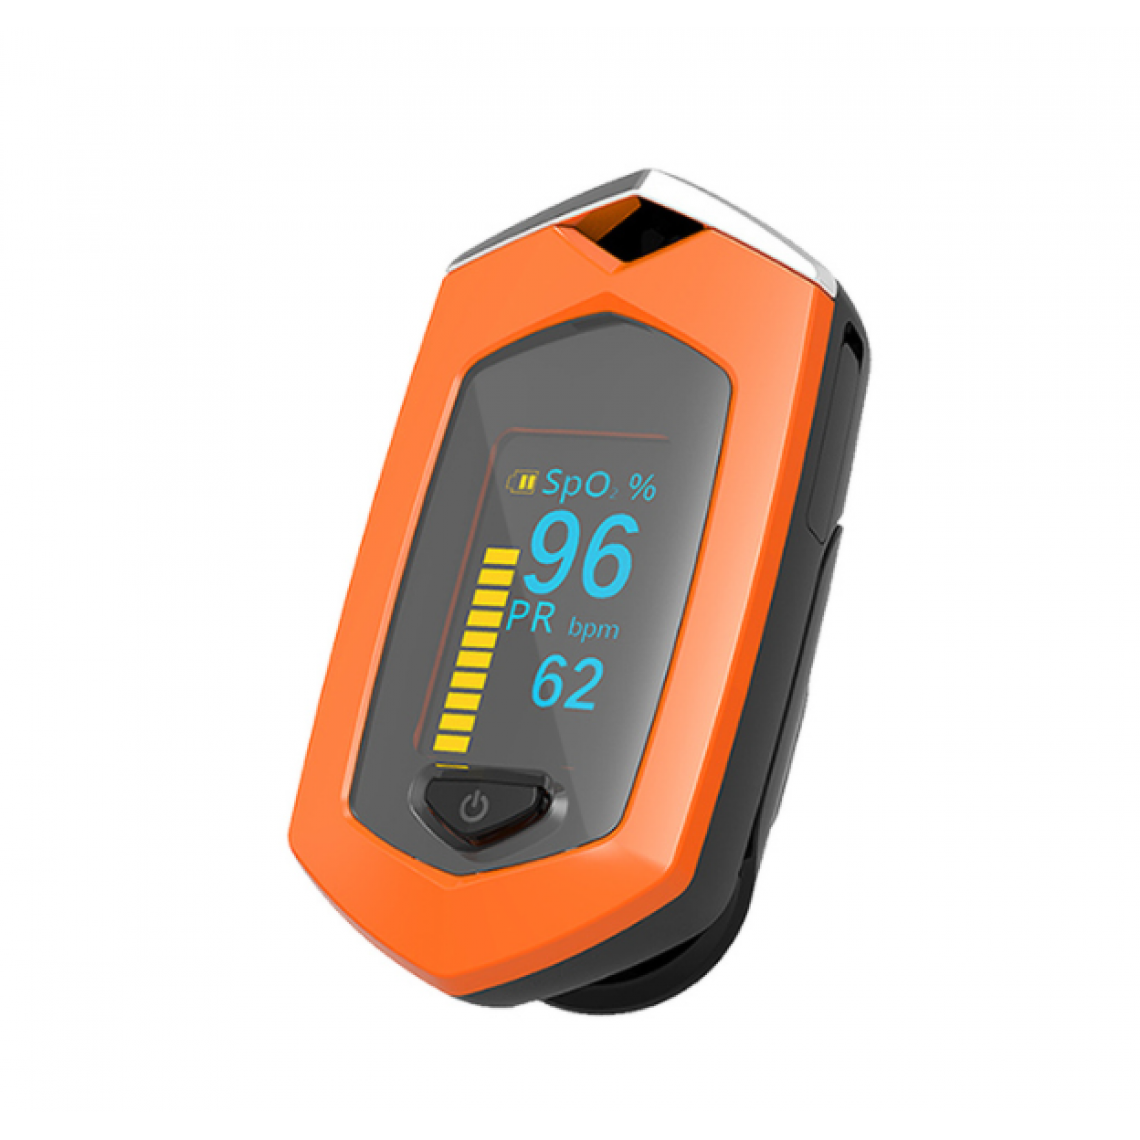 Corbin - Oxymètre médical rechargeable Finger Oxygen Pulse Meter Moniteur Oximetro - Autre appareil de mesure